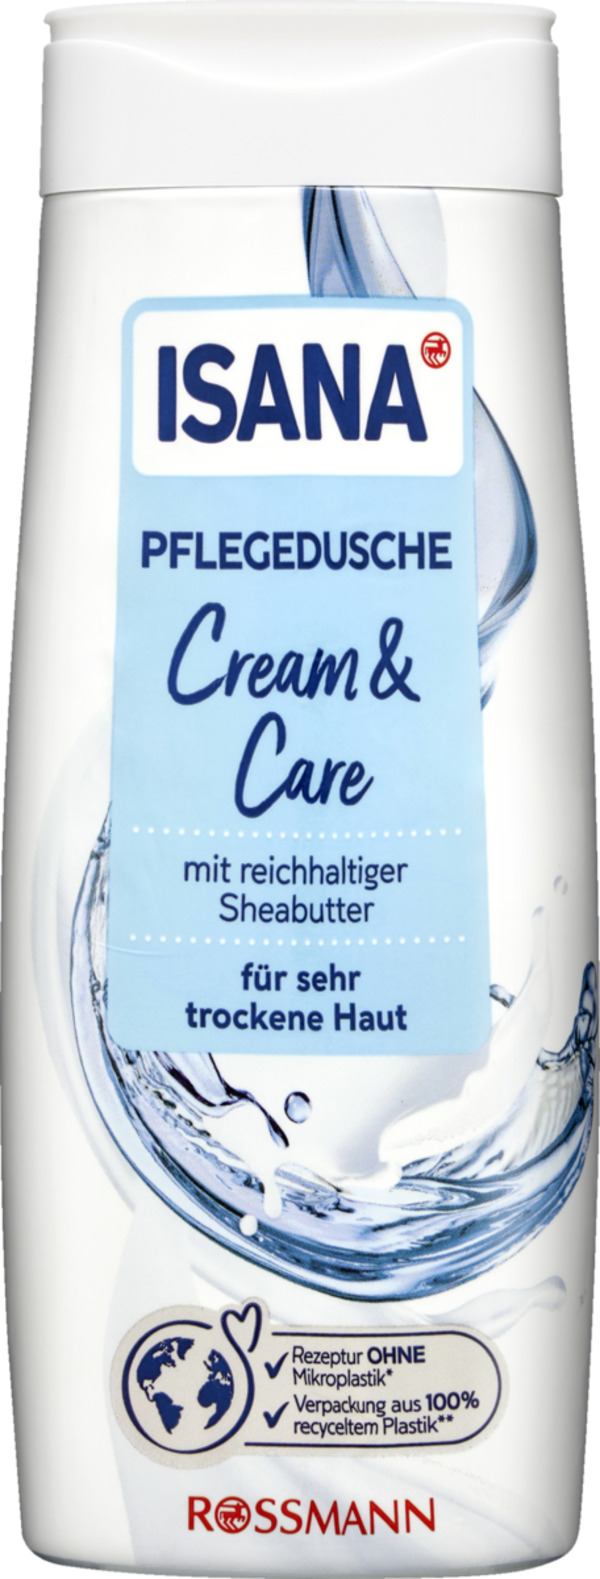 Bild 1 von ISANA Pflegedusche Cream & Care 3.30 EUR/1 l